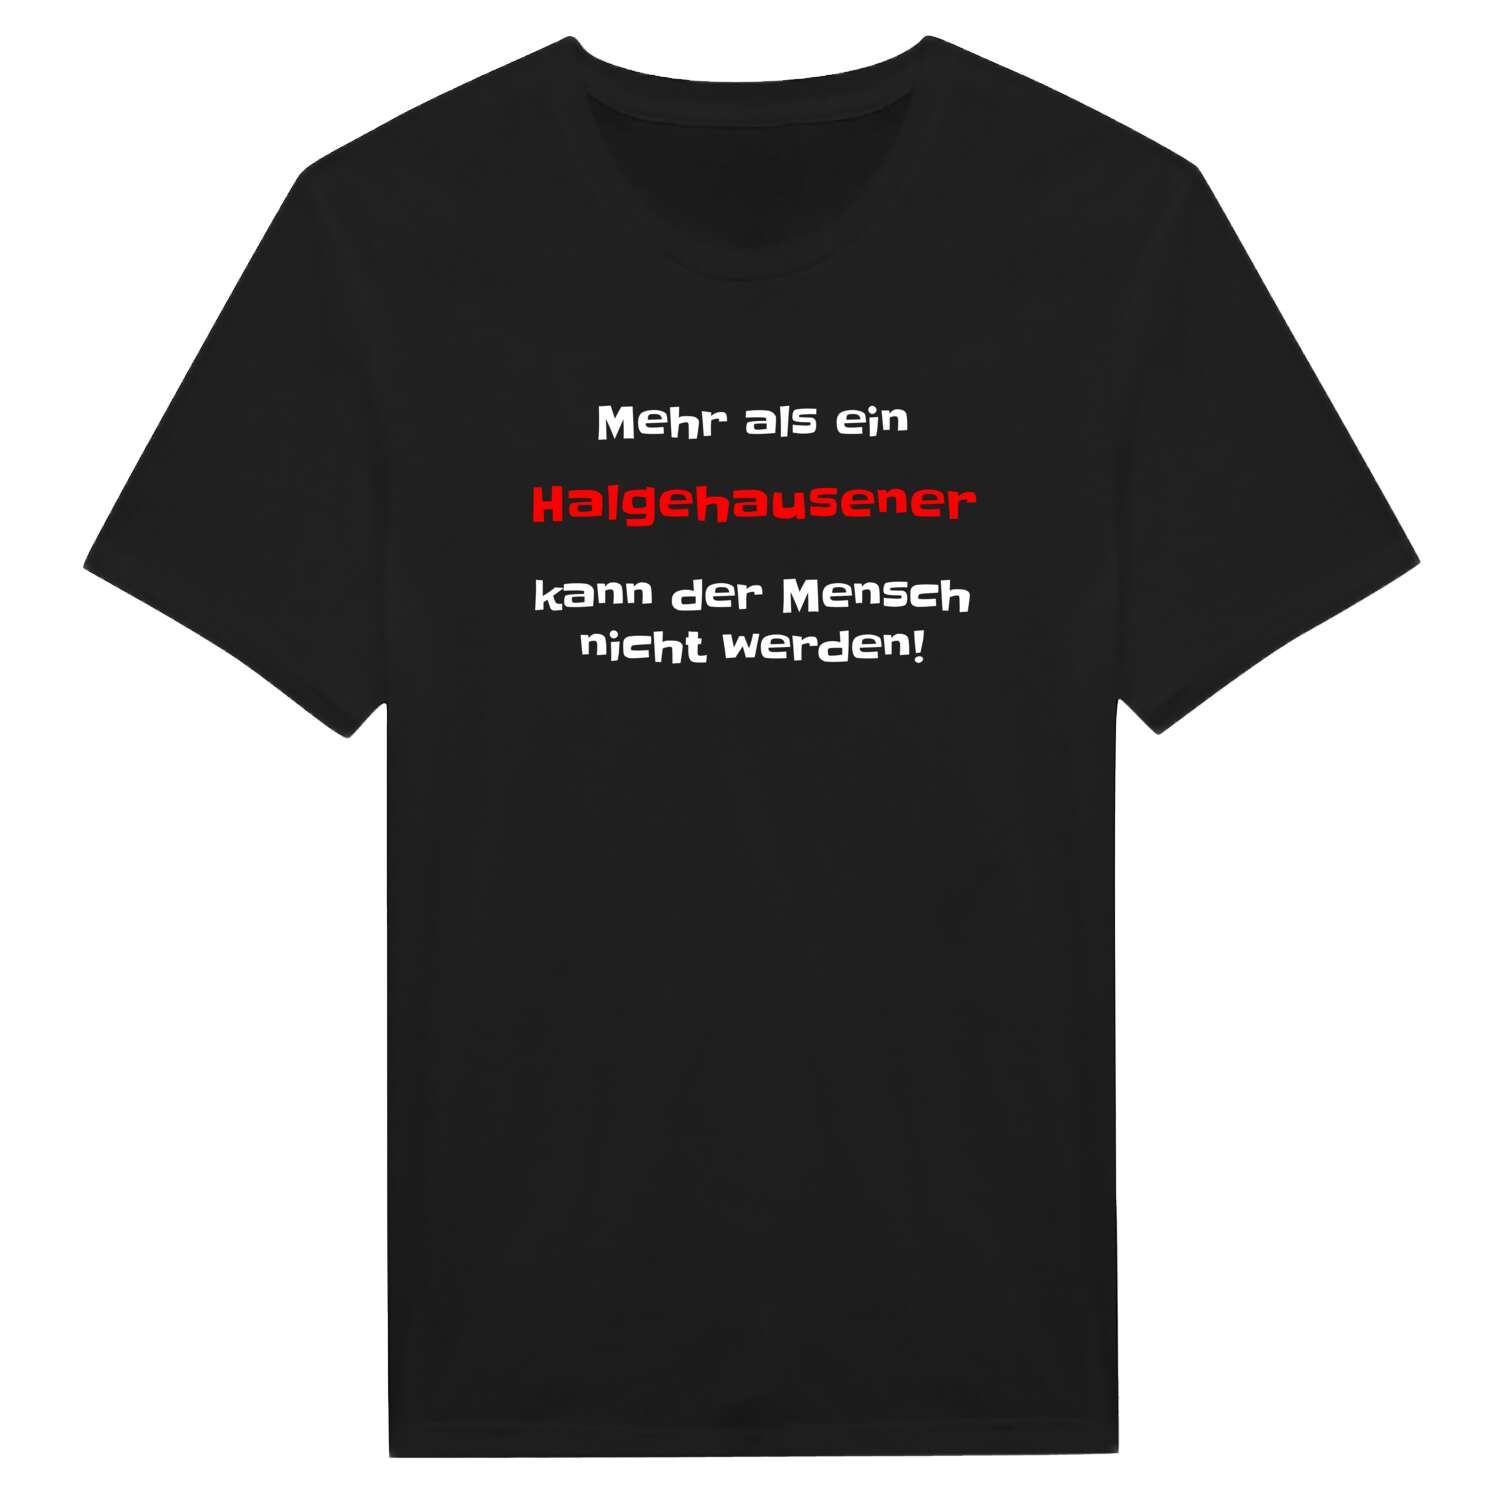 Halgehausen T-Shirt »Mehr als ein«